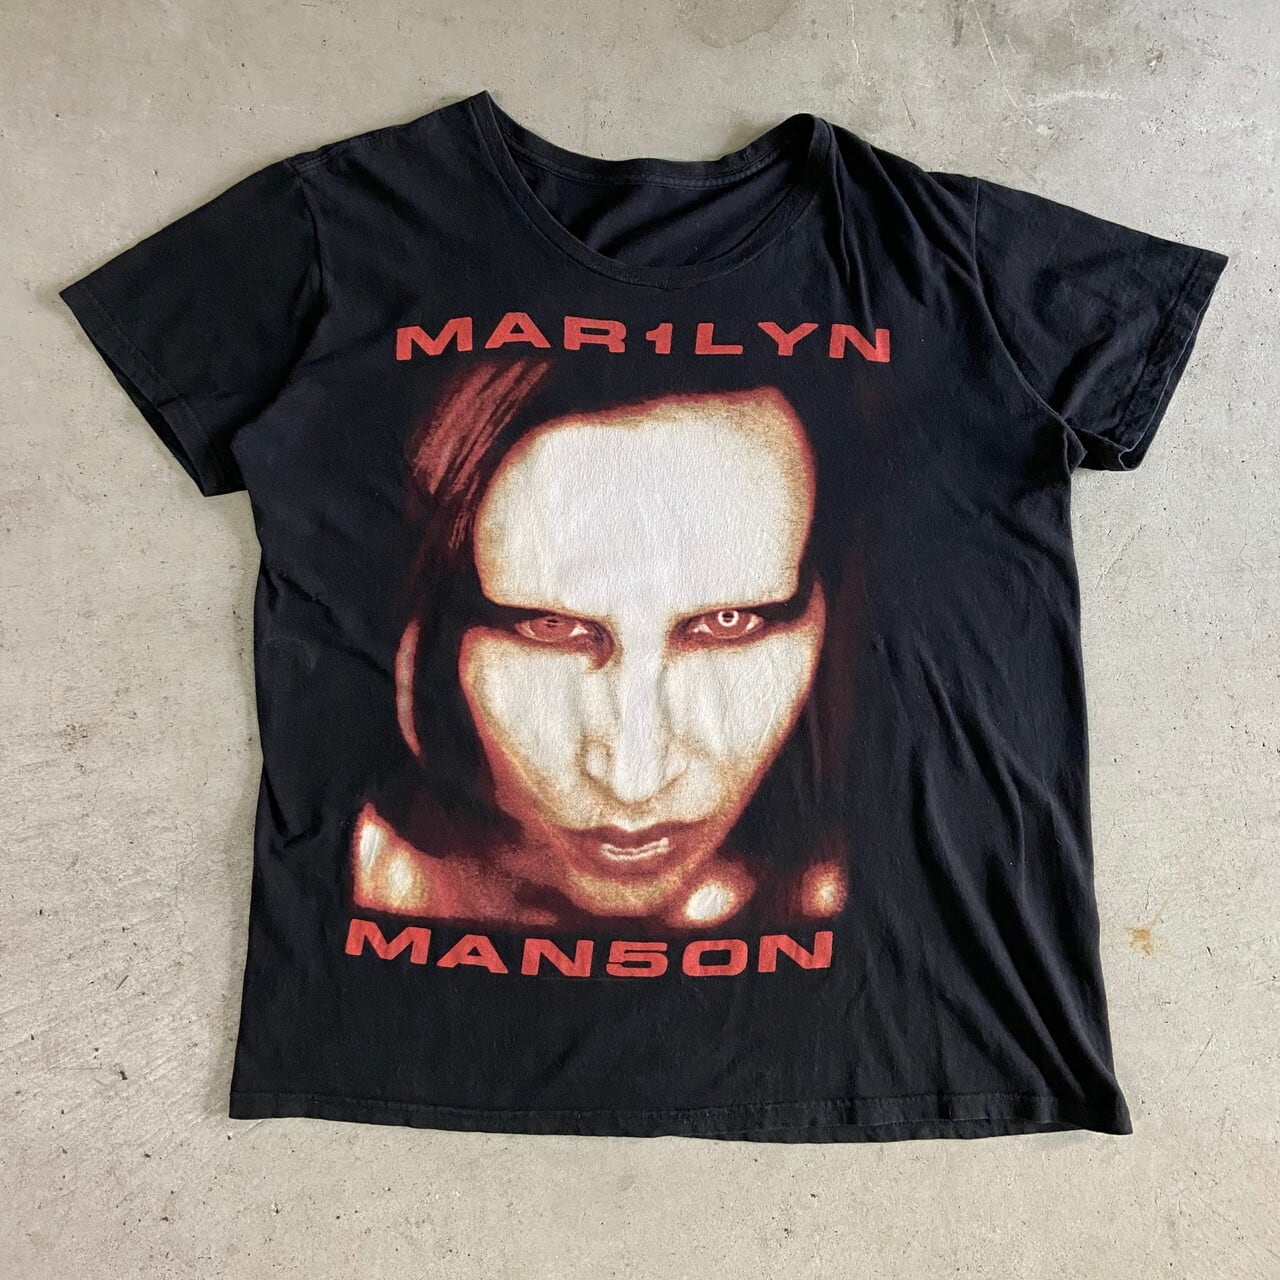 激レア ロンT マリリンマンソン marilyn manson 90年代 666 - Tシャツ